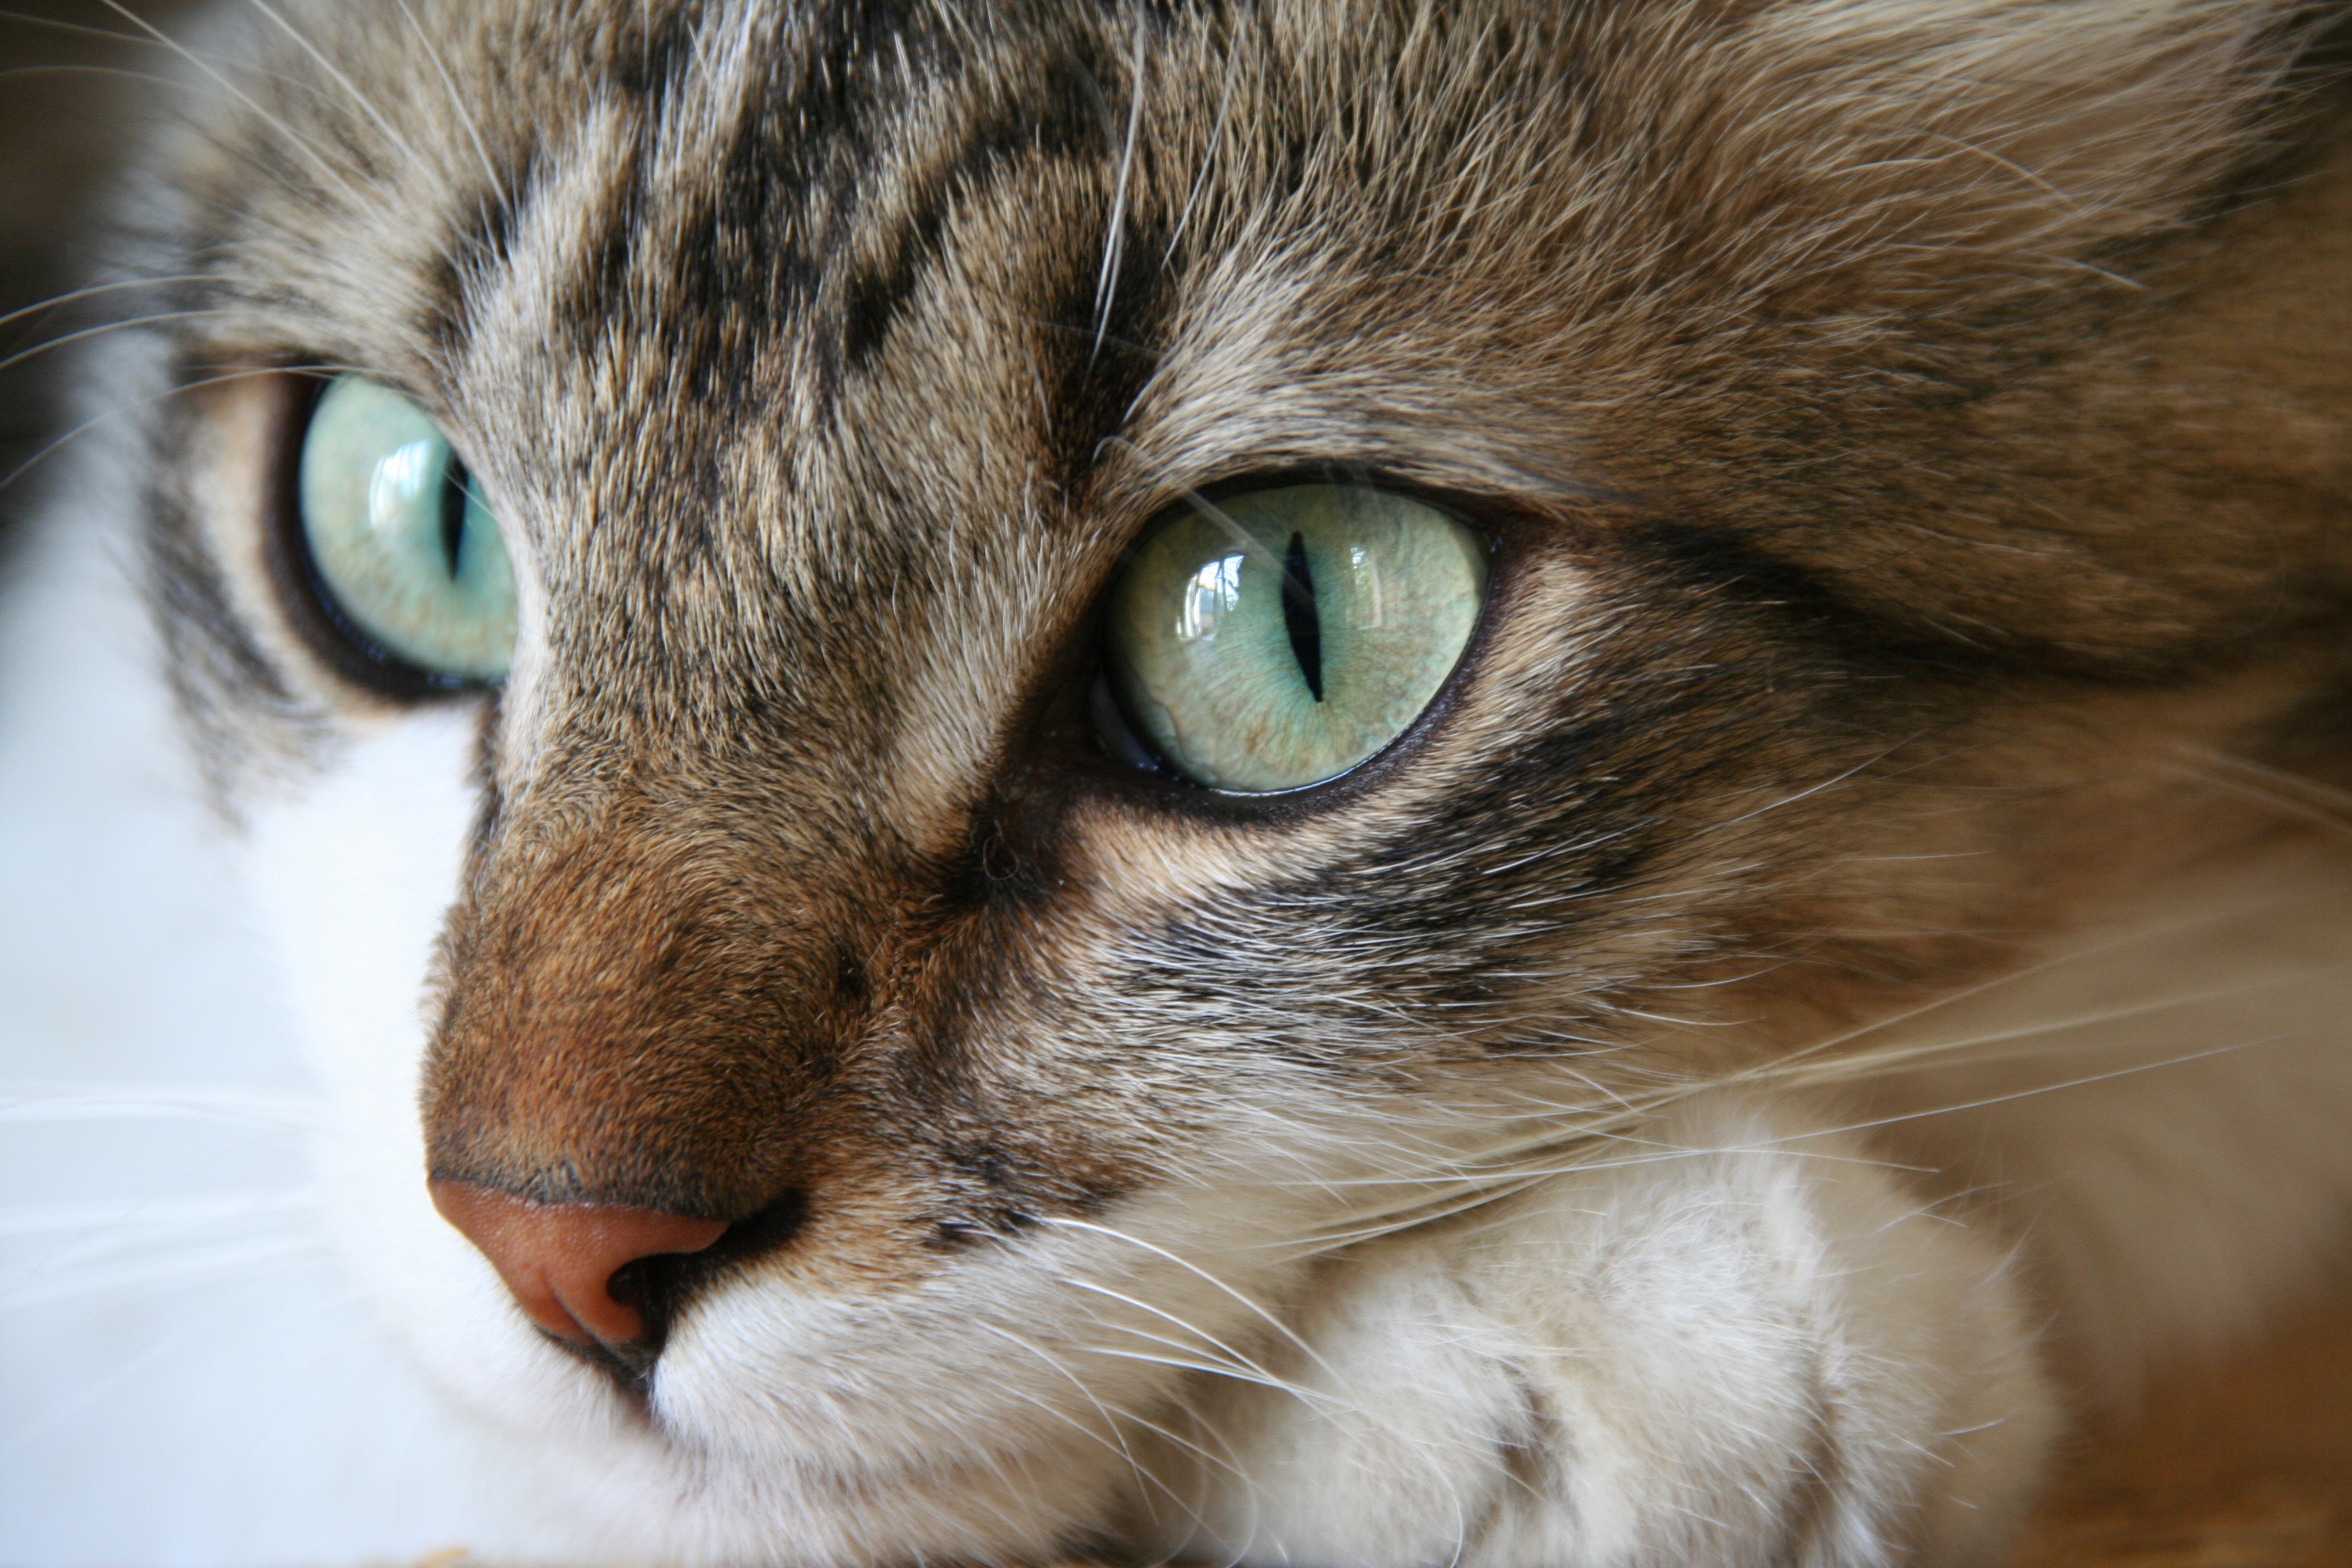 フリー画像 動物写真 哺乳類 ネコ科 猫 ネコ 三毛猫 画像素材なら 無料 フリー写真素材のフリーフォト